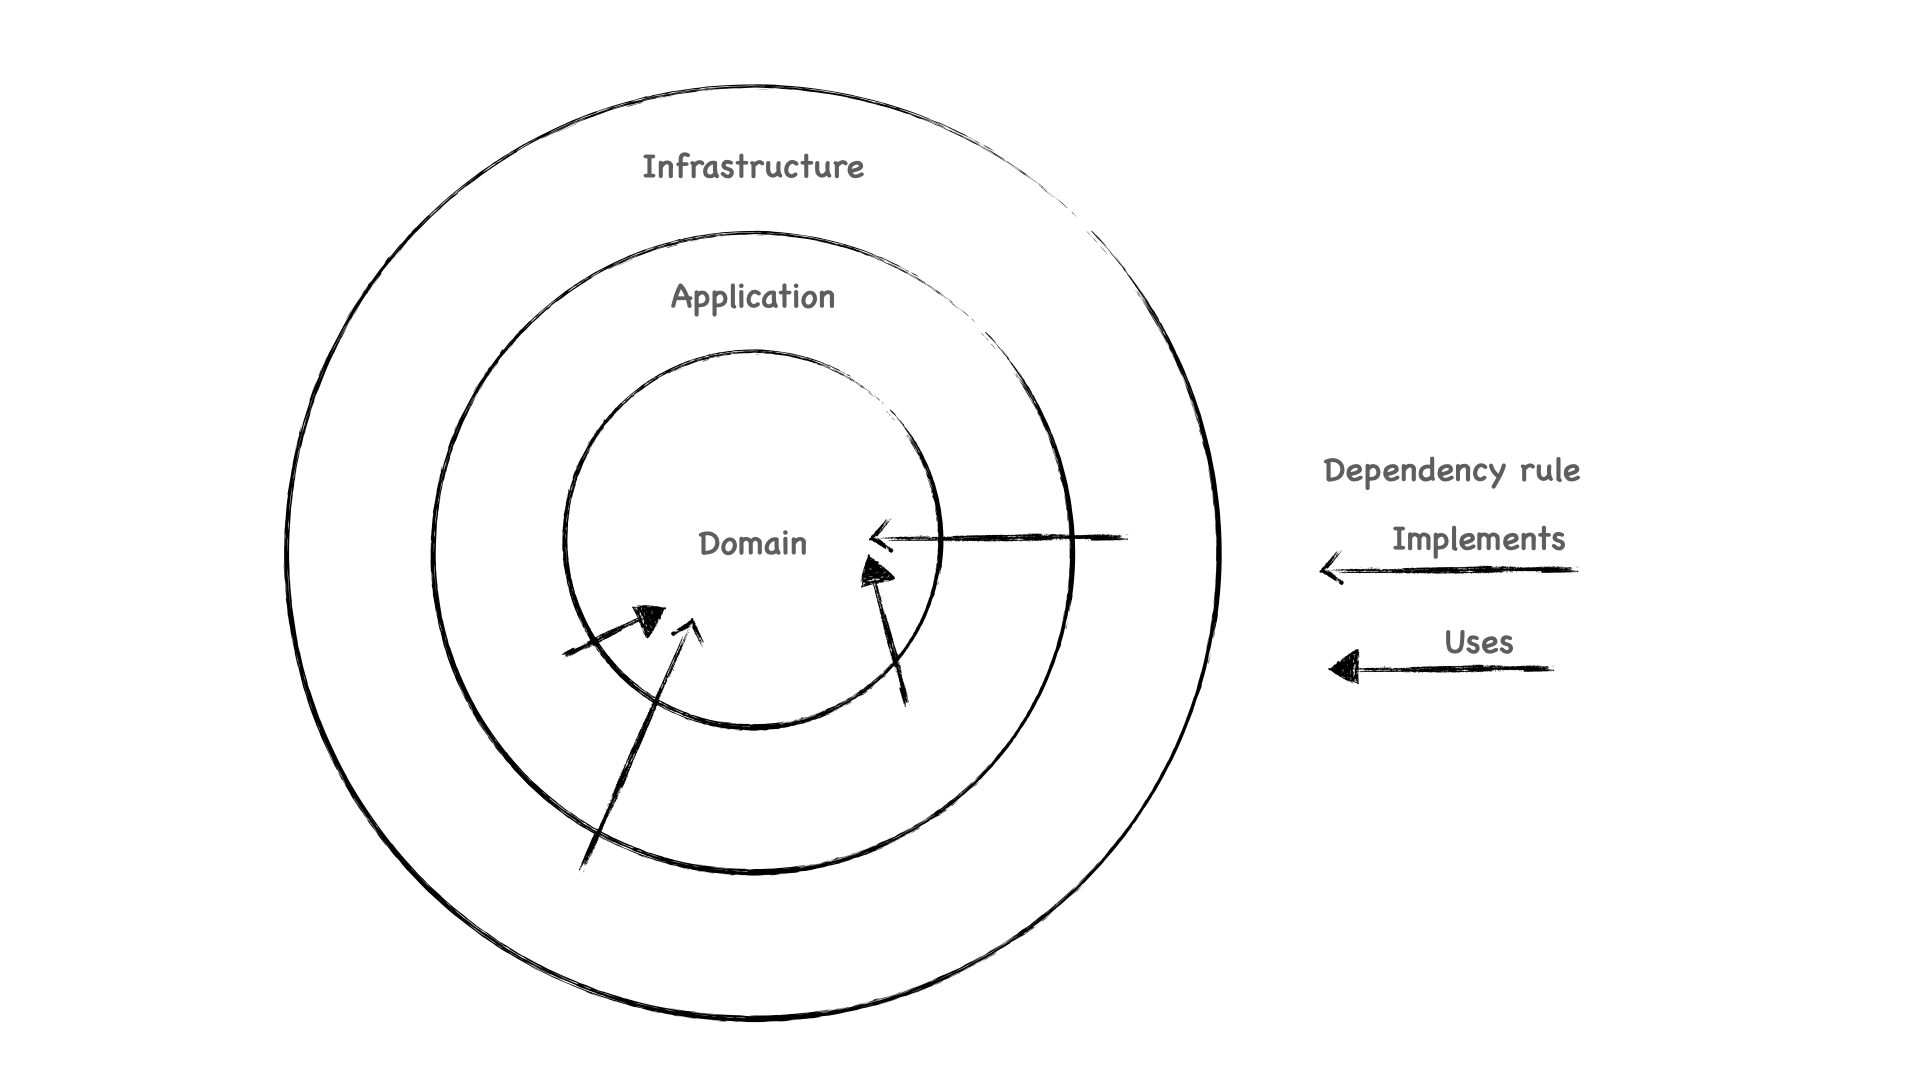 Diagrama mostrando la clásica representación en círculos concéntricos de una arquitectura limpia